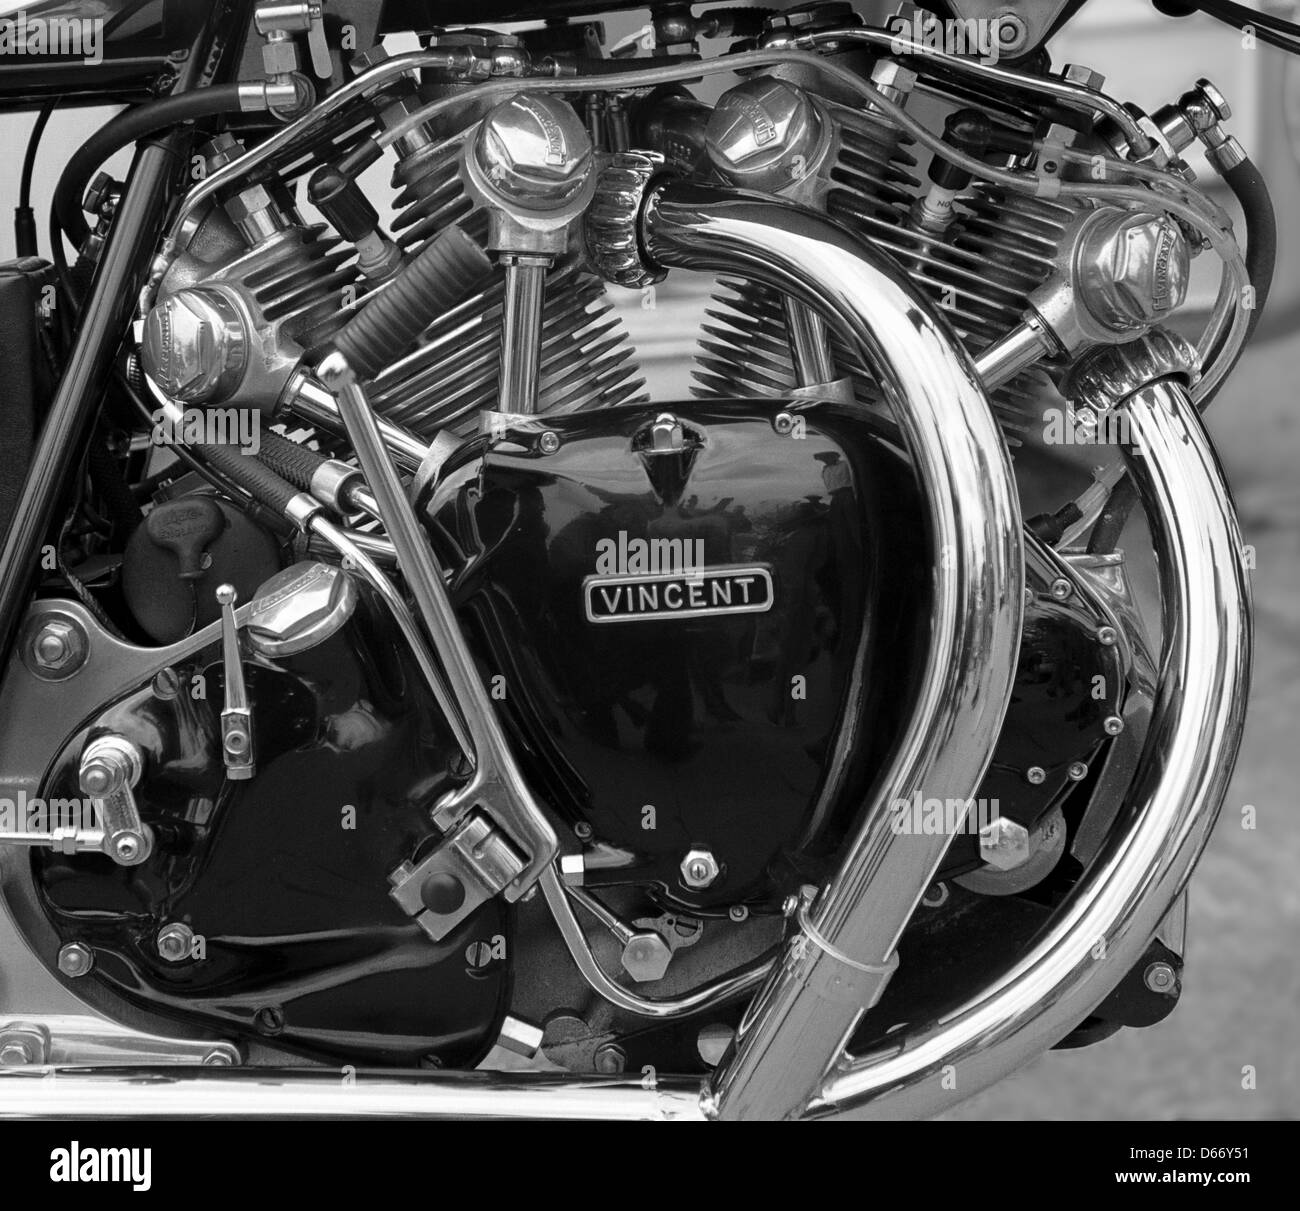 Vincent motore di motocicletta Motocicletta britannica dal 1950 Foto Stock